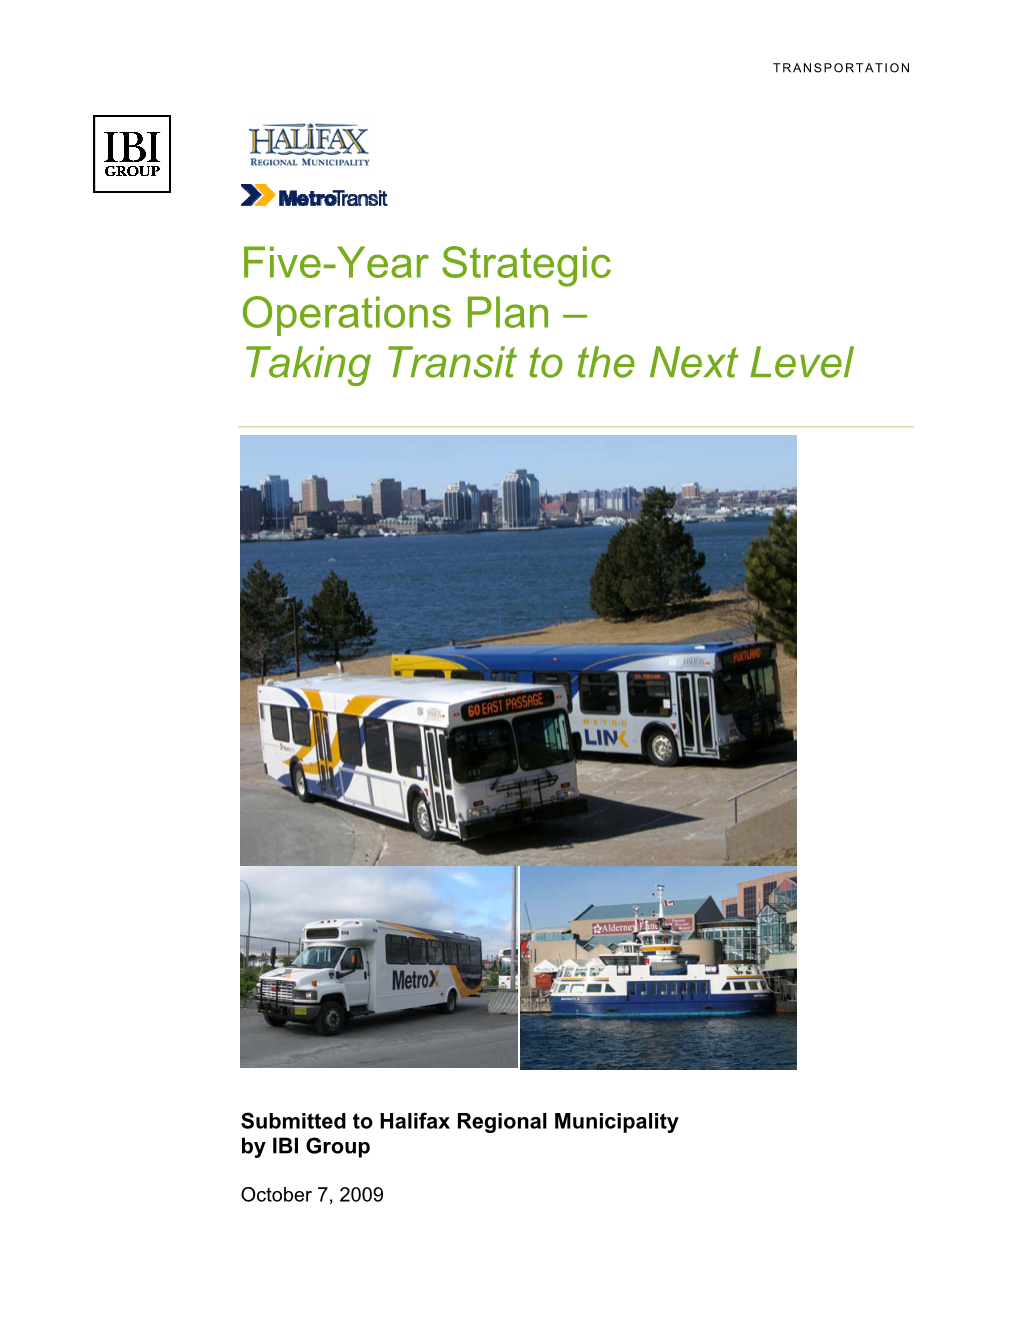 Metro Transit Five-Year Strategic Operations Plan